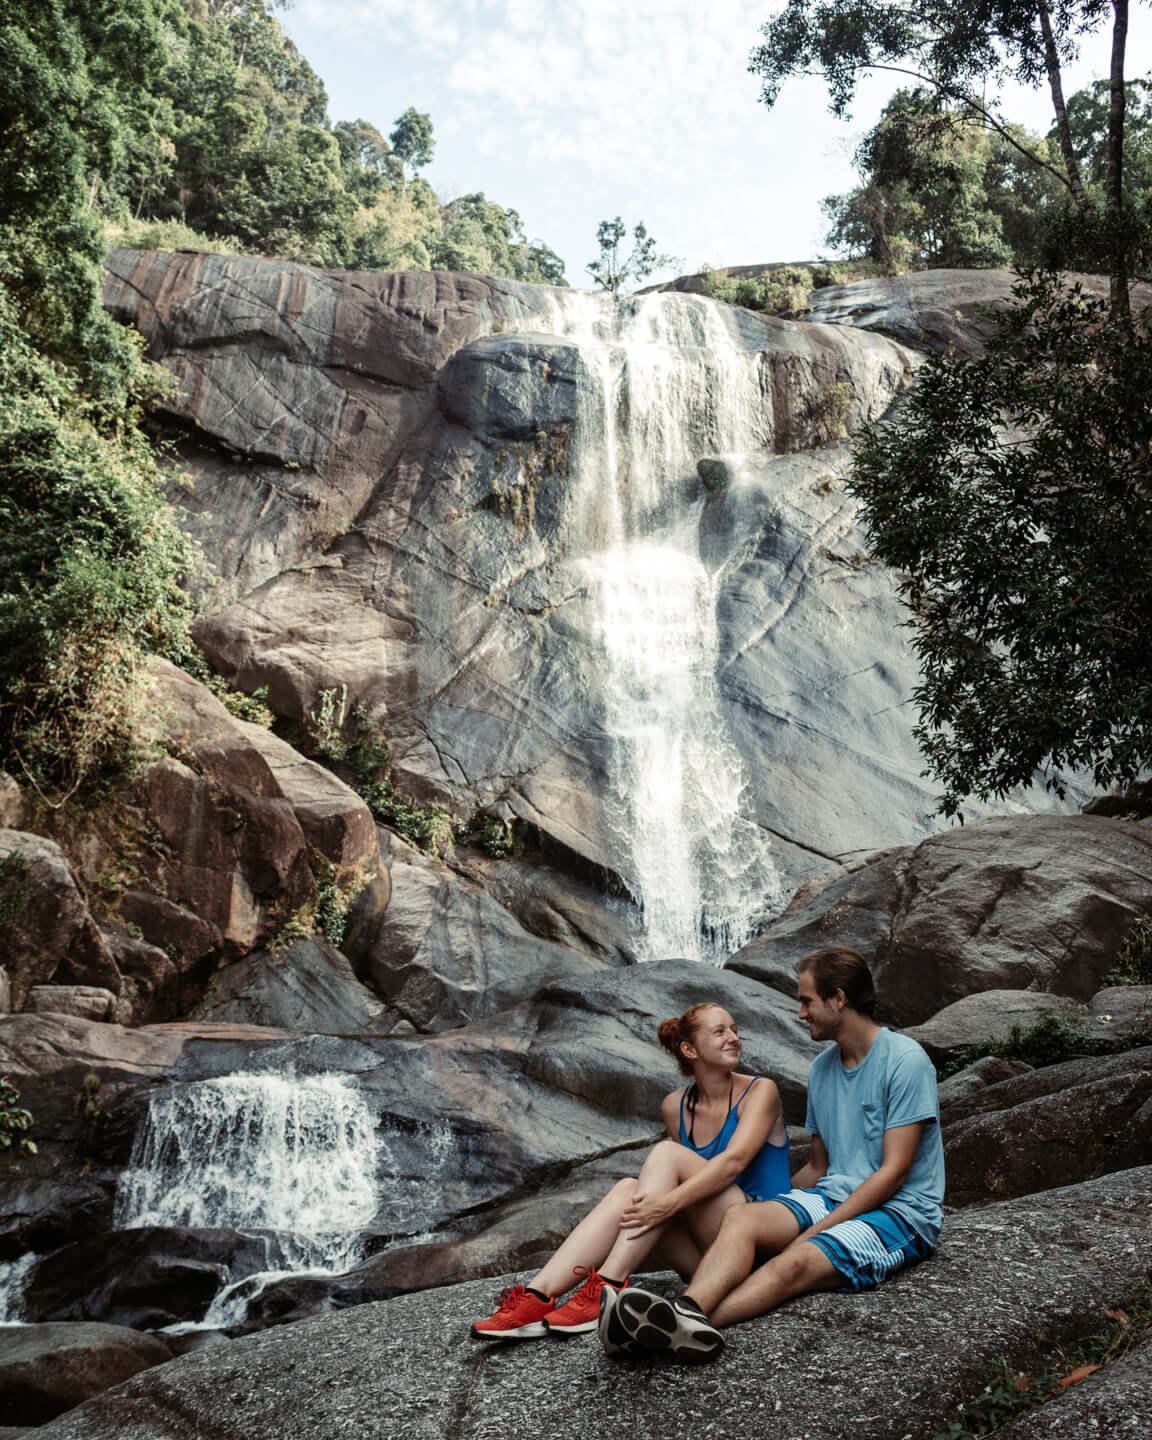 Seven Wells Waterfall in Langkawi, Malaysia